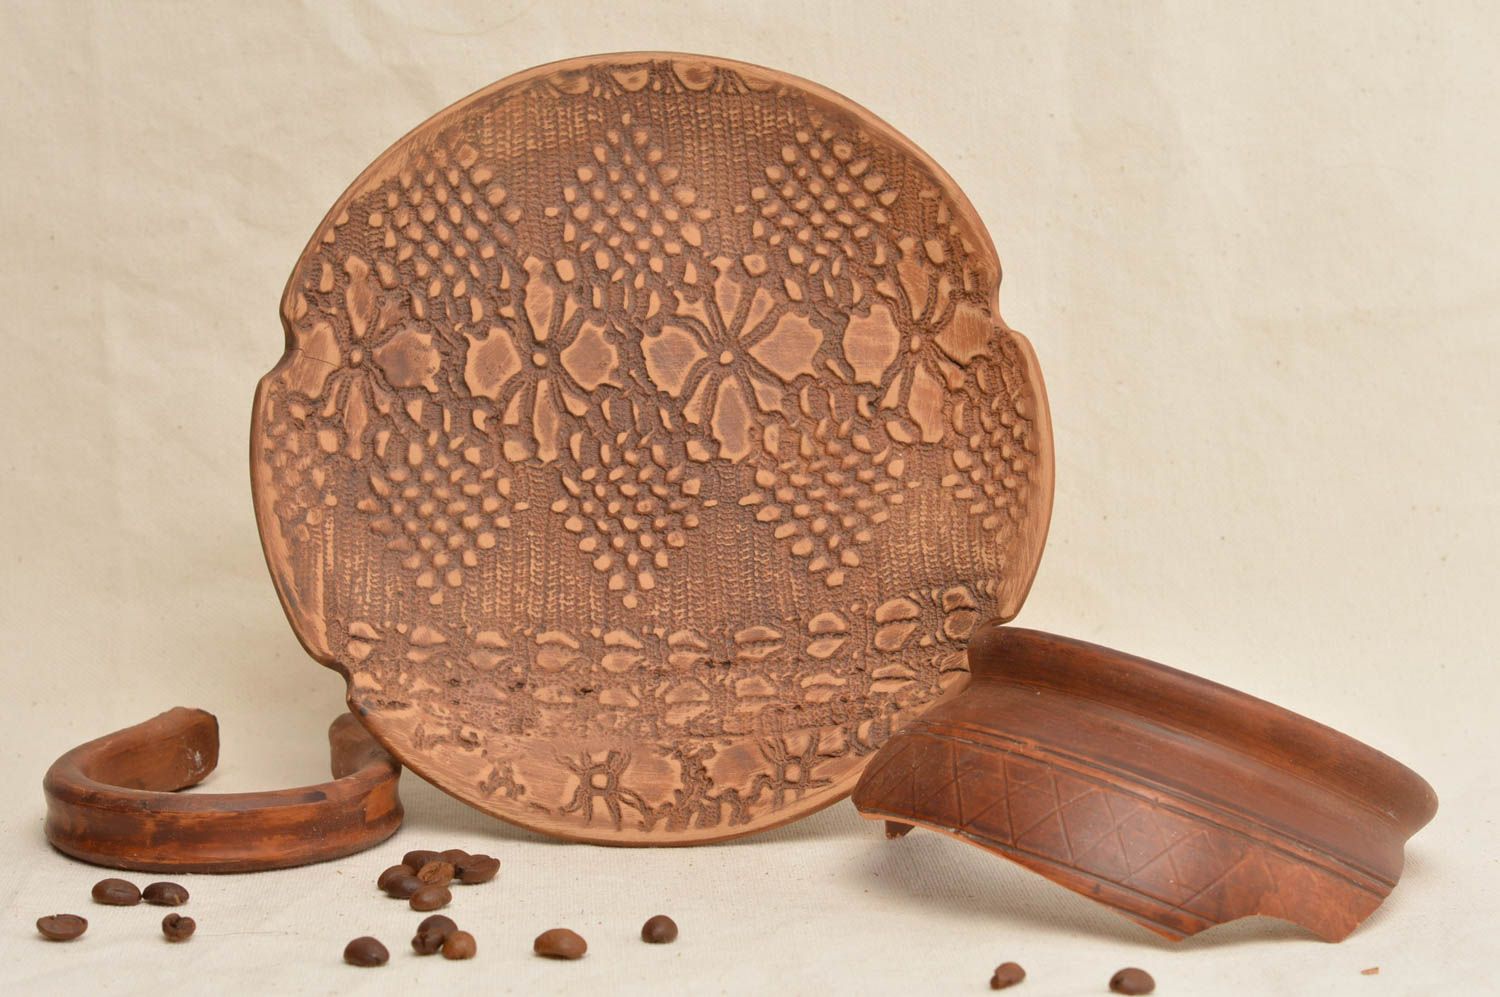 Оригинальная тарелка из глины с узорами коричневая красивая ручной работы фото 1